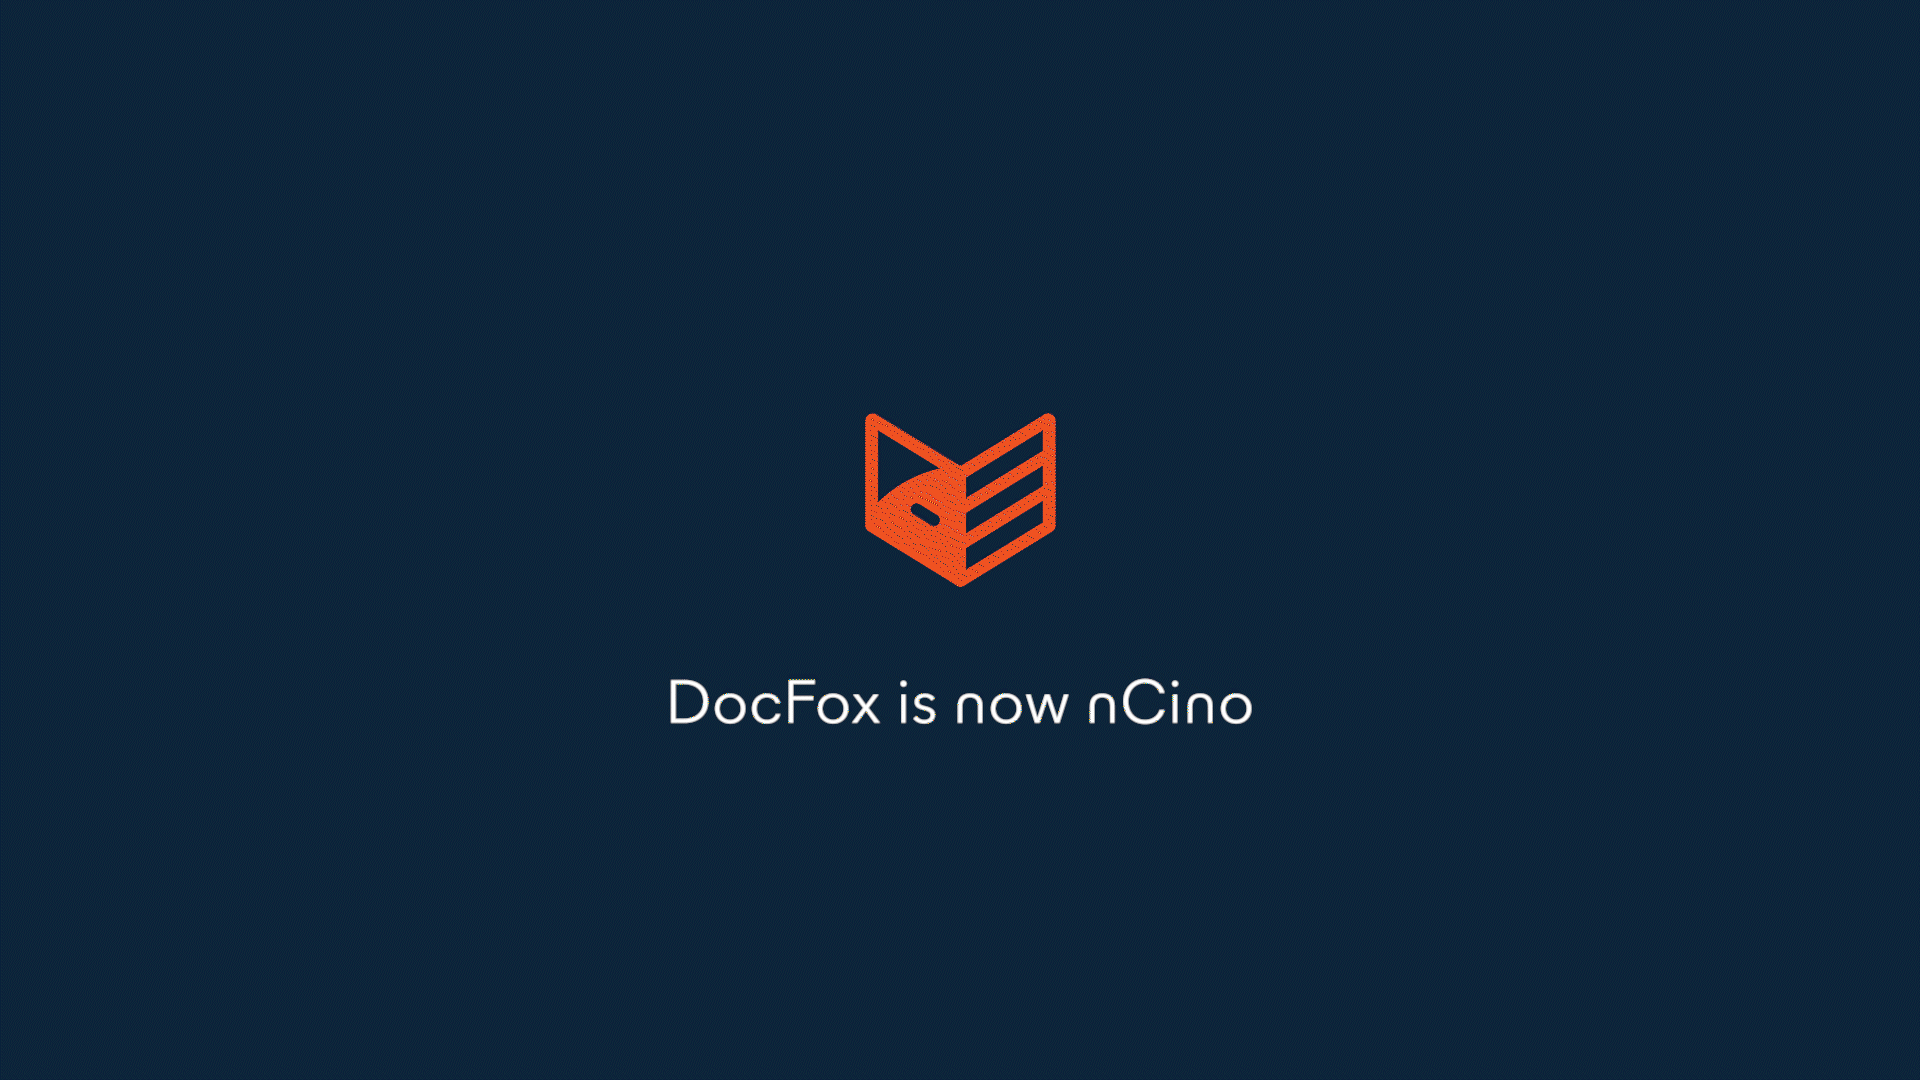 DocFox is now nCino 1920 x 1080